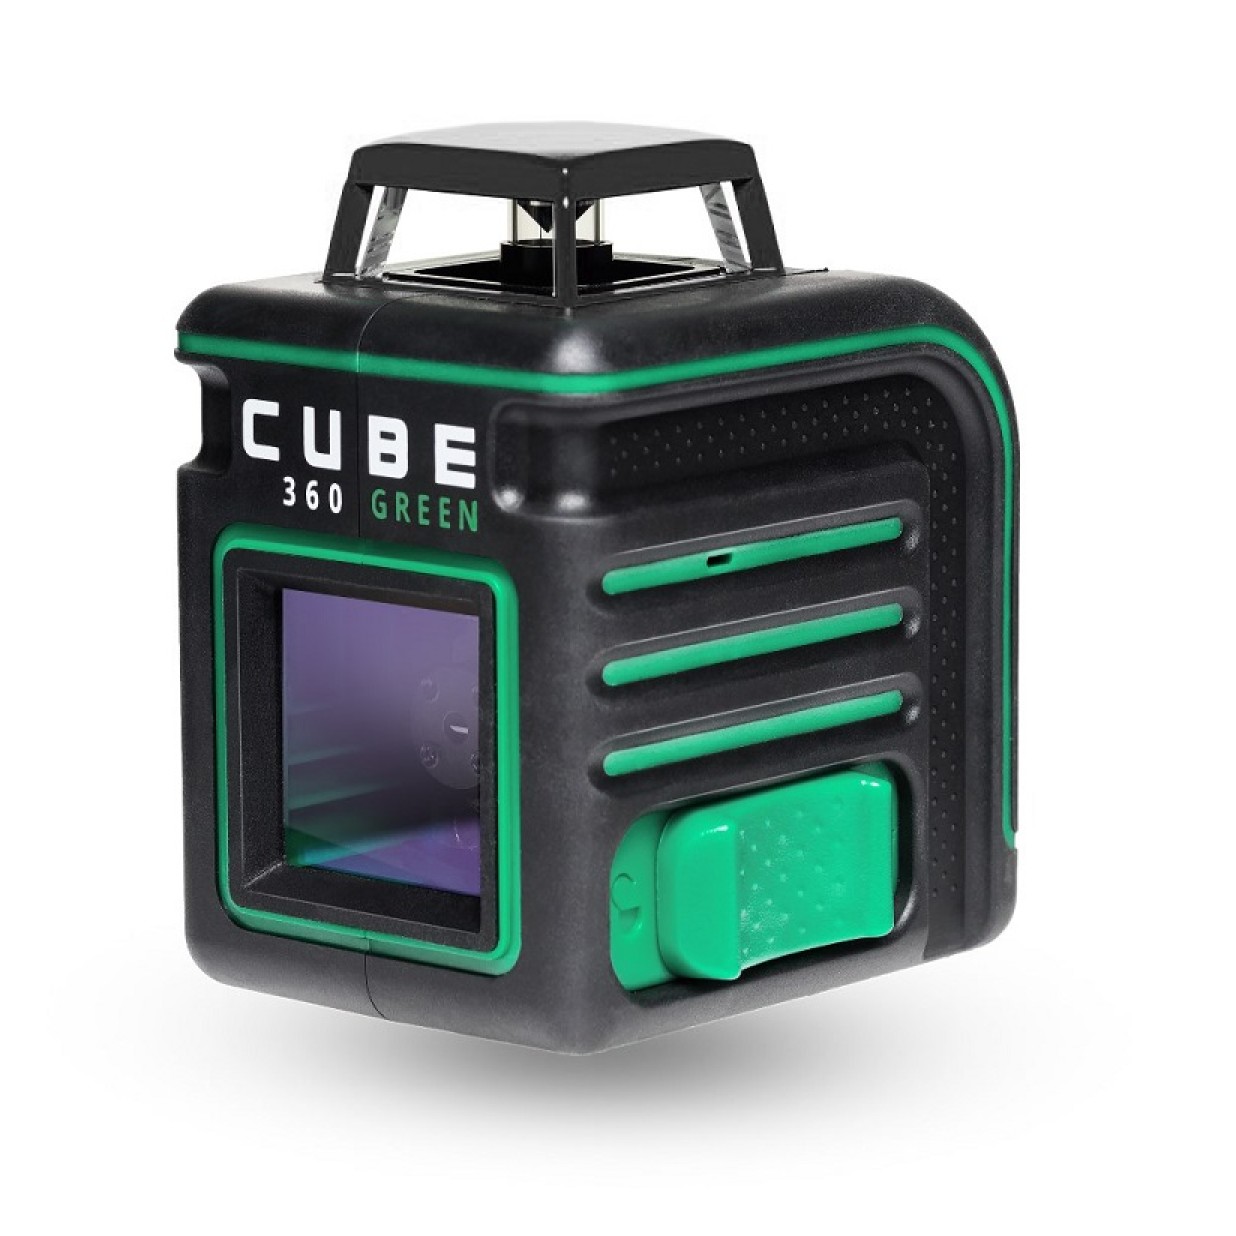 Cube 360 ultimate edition. Нивелир лазерный ada Cube 360. Лазерный уровень Cube 2-360. Ada Cube 360 Green professional Edition. Лазерный уровень ada Cube 360 Basic Edition.